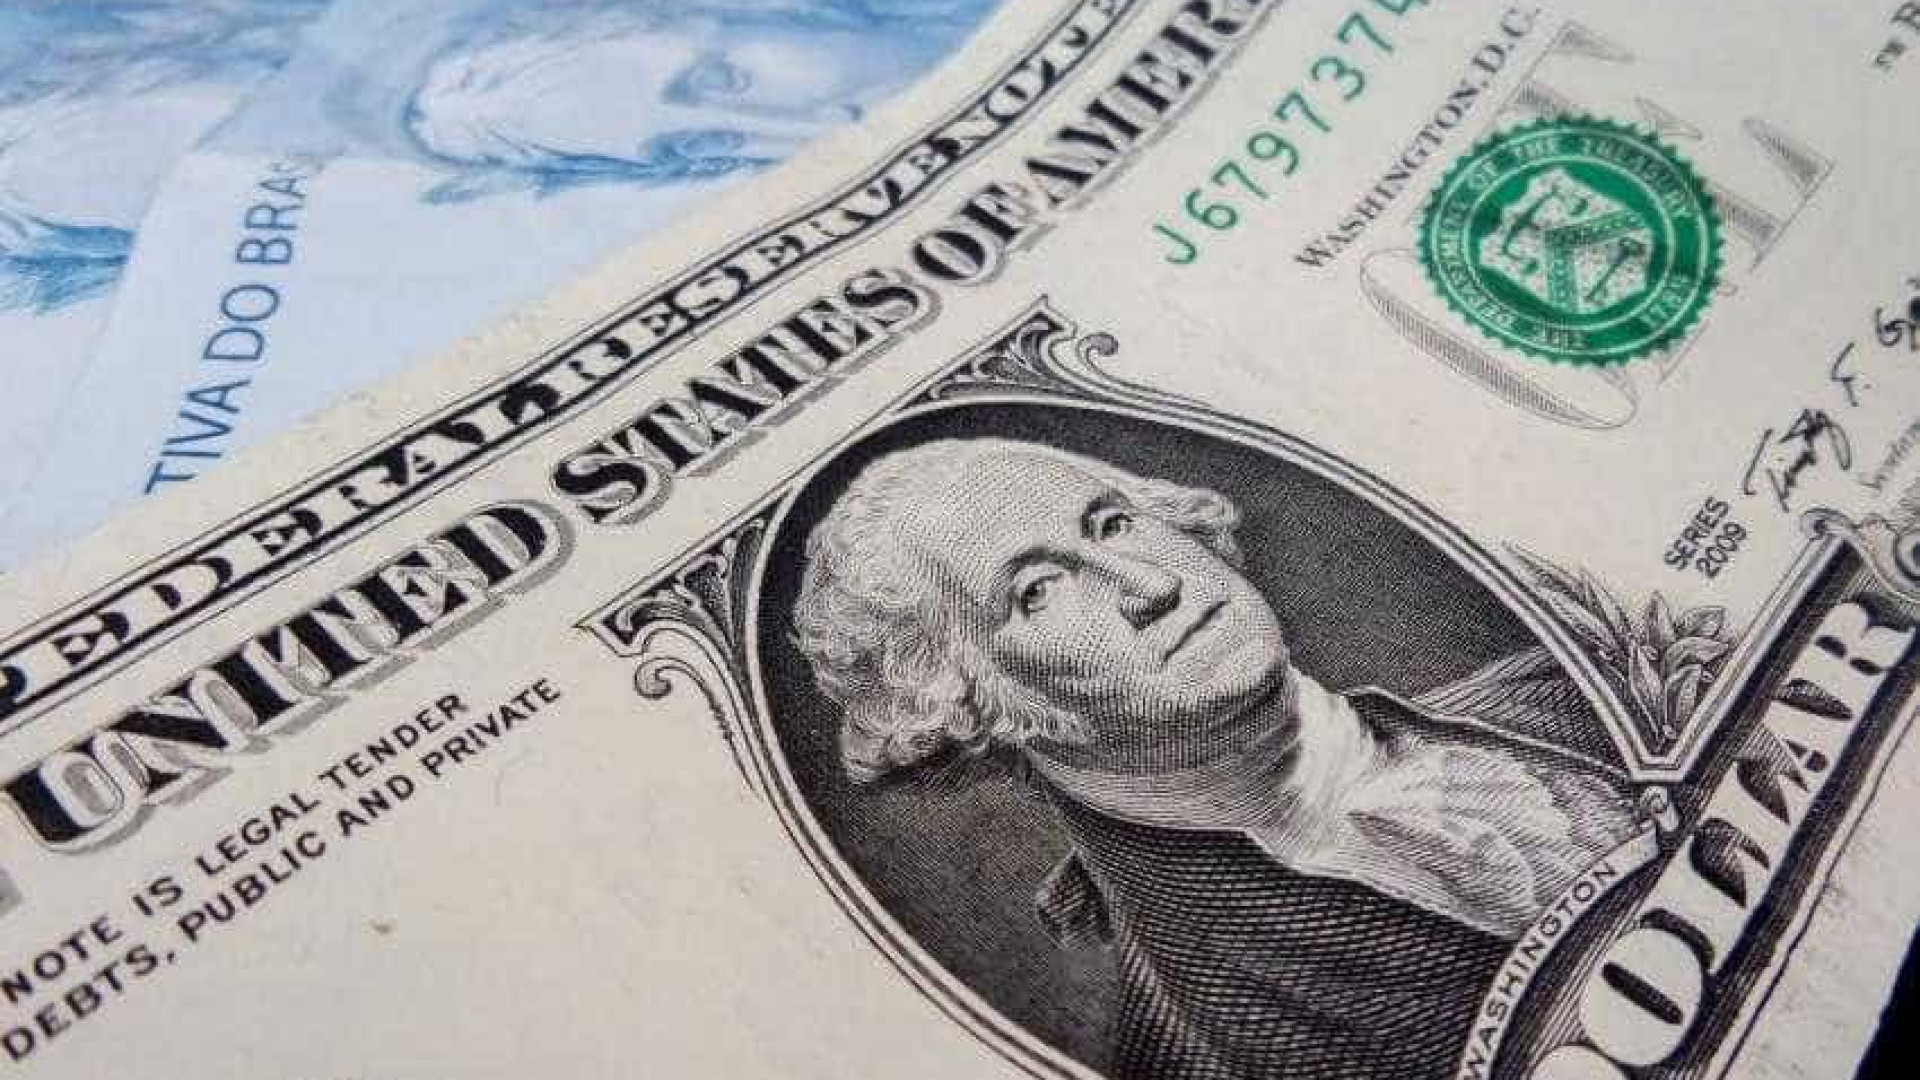 Dólar vai a quase R$ 3,25 após Temer suspender reforma da Previdência